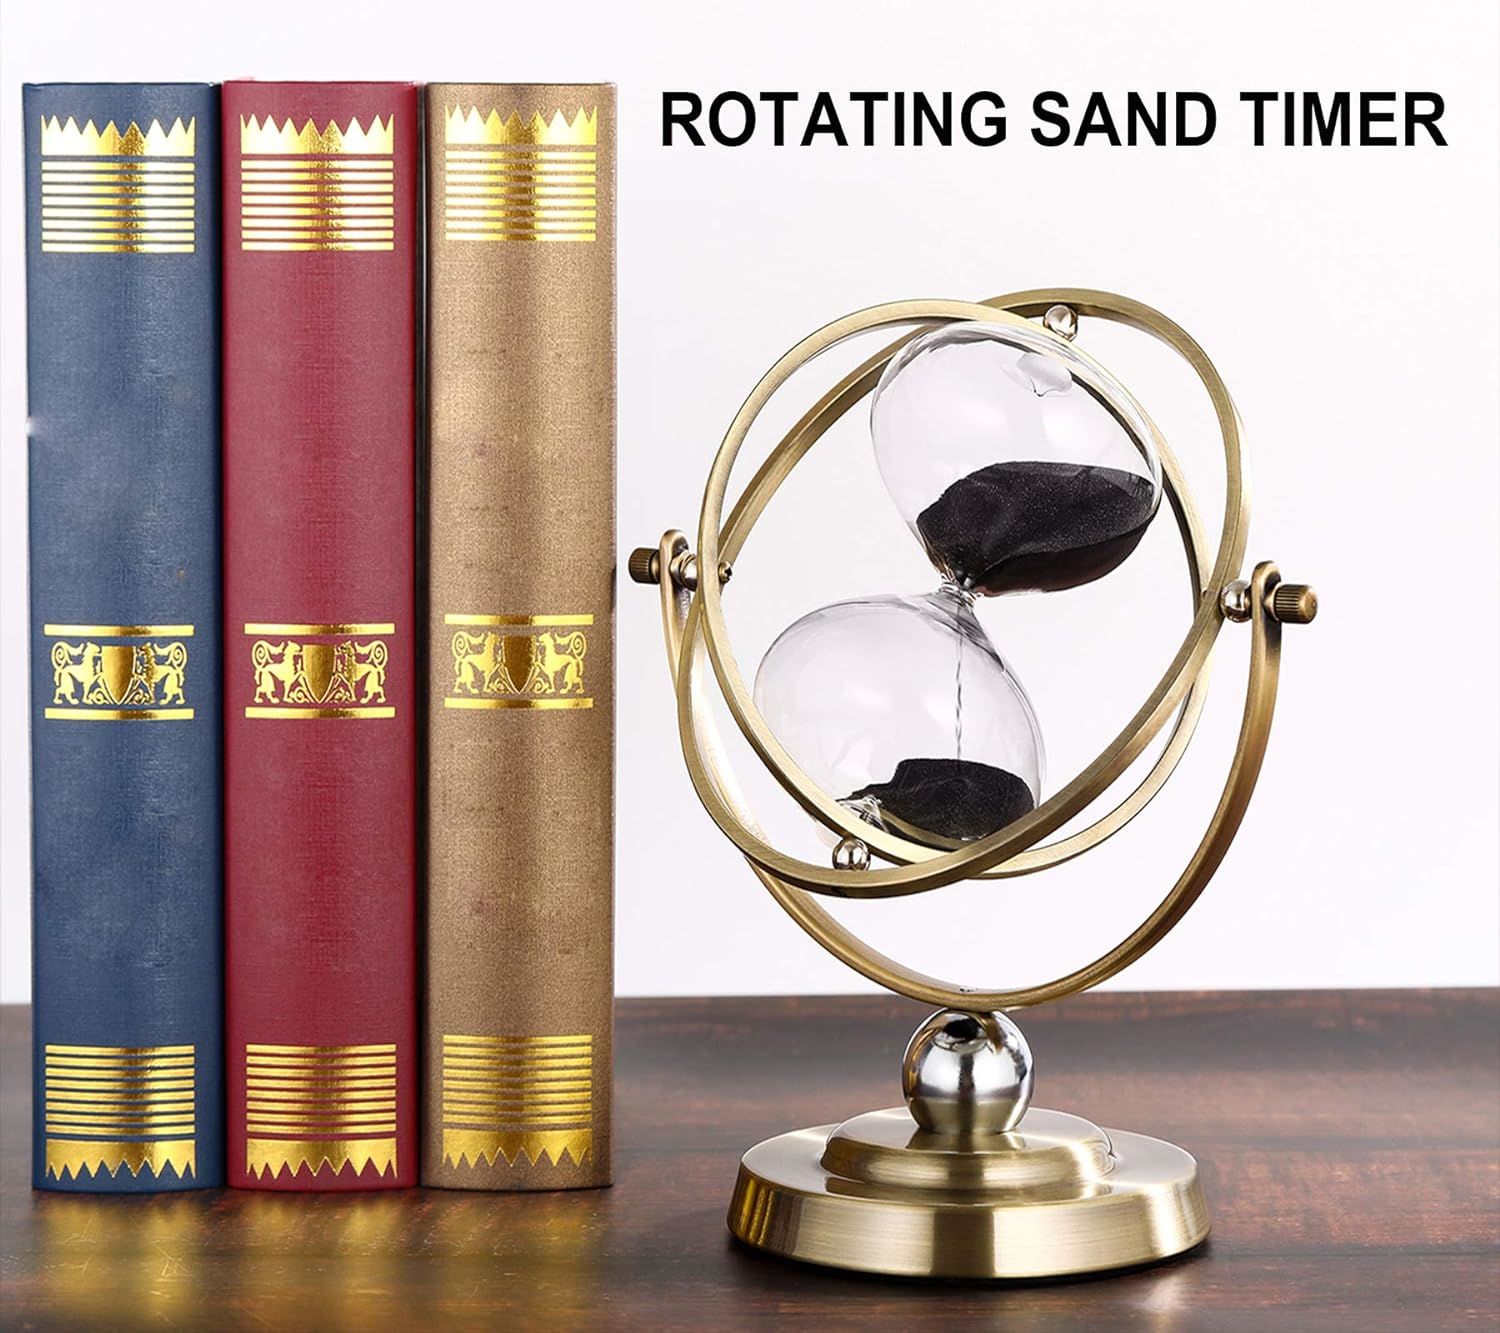 Büyük Antik Kum Saati (60 dakika siyah)